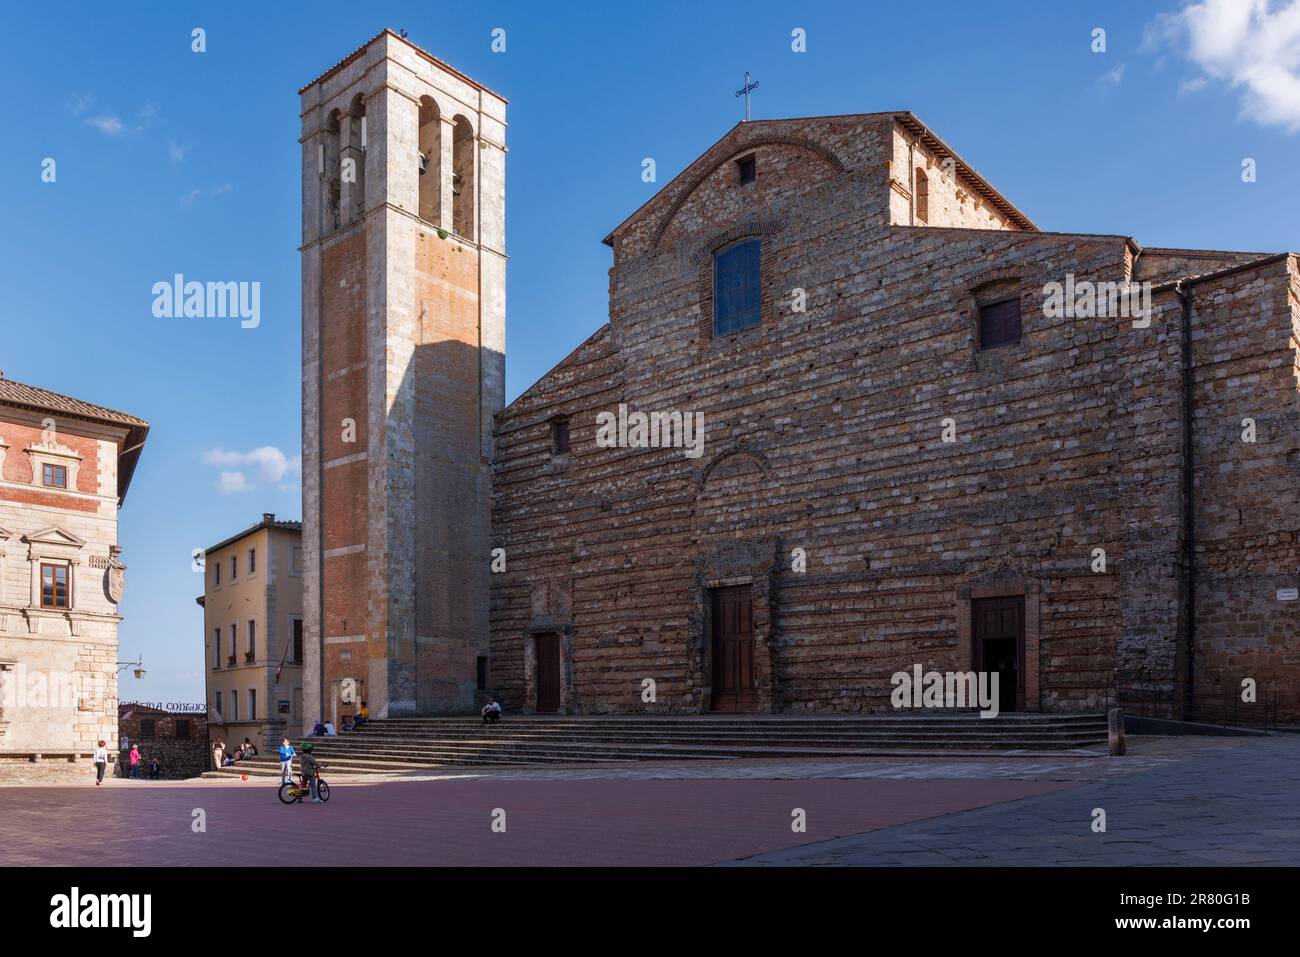 Montepulciano, province de Sienne, Toscane, Italie. Le Duomo ou la cathédrale de la Piazza Grande. La Cattedrale dell'Assunta a été construite pendant l'an 16th Banque D'Images